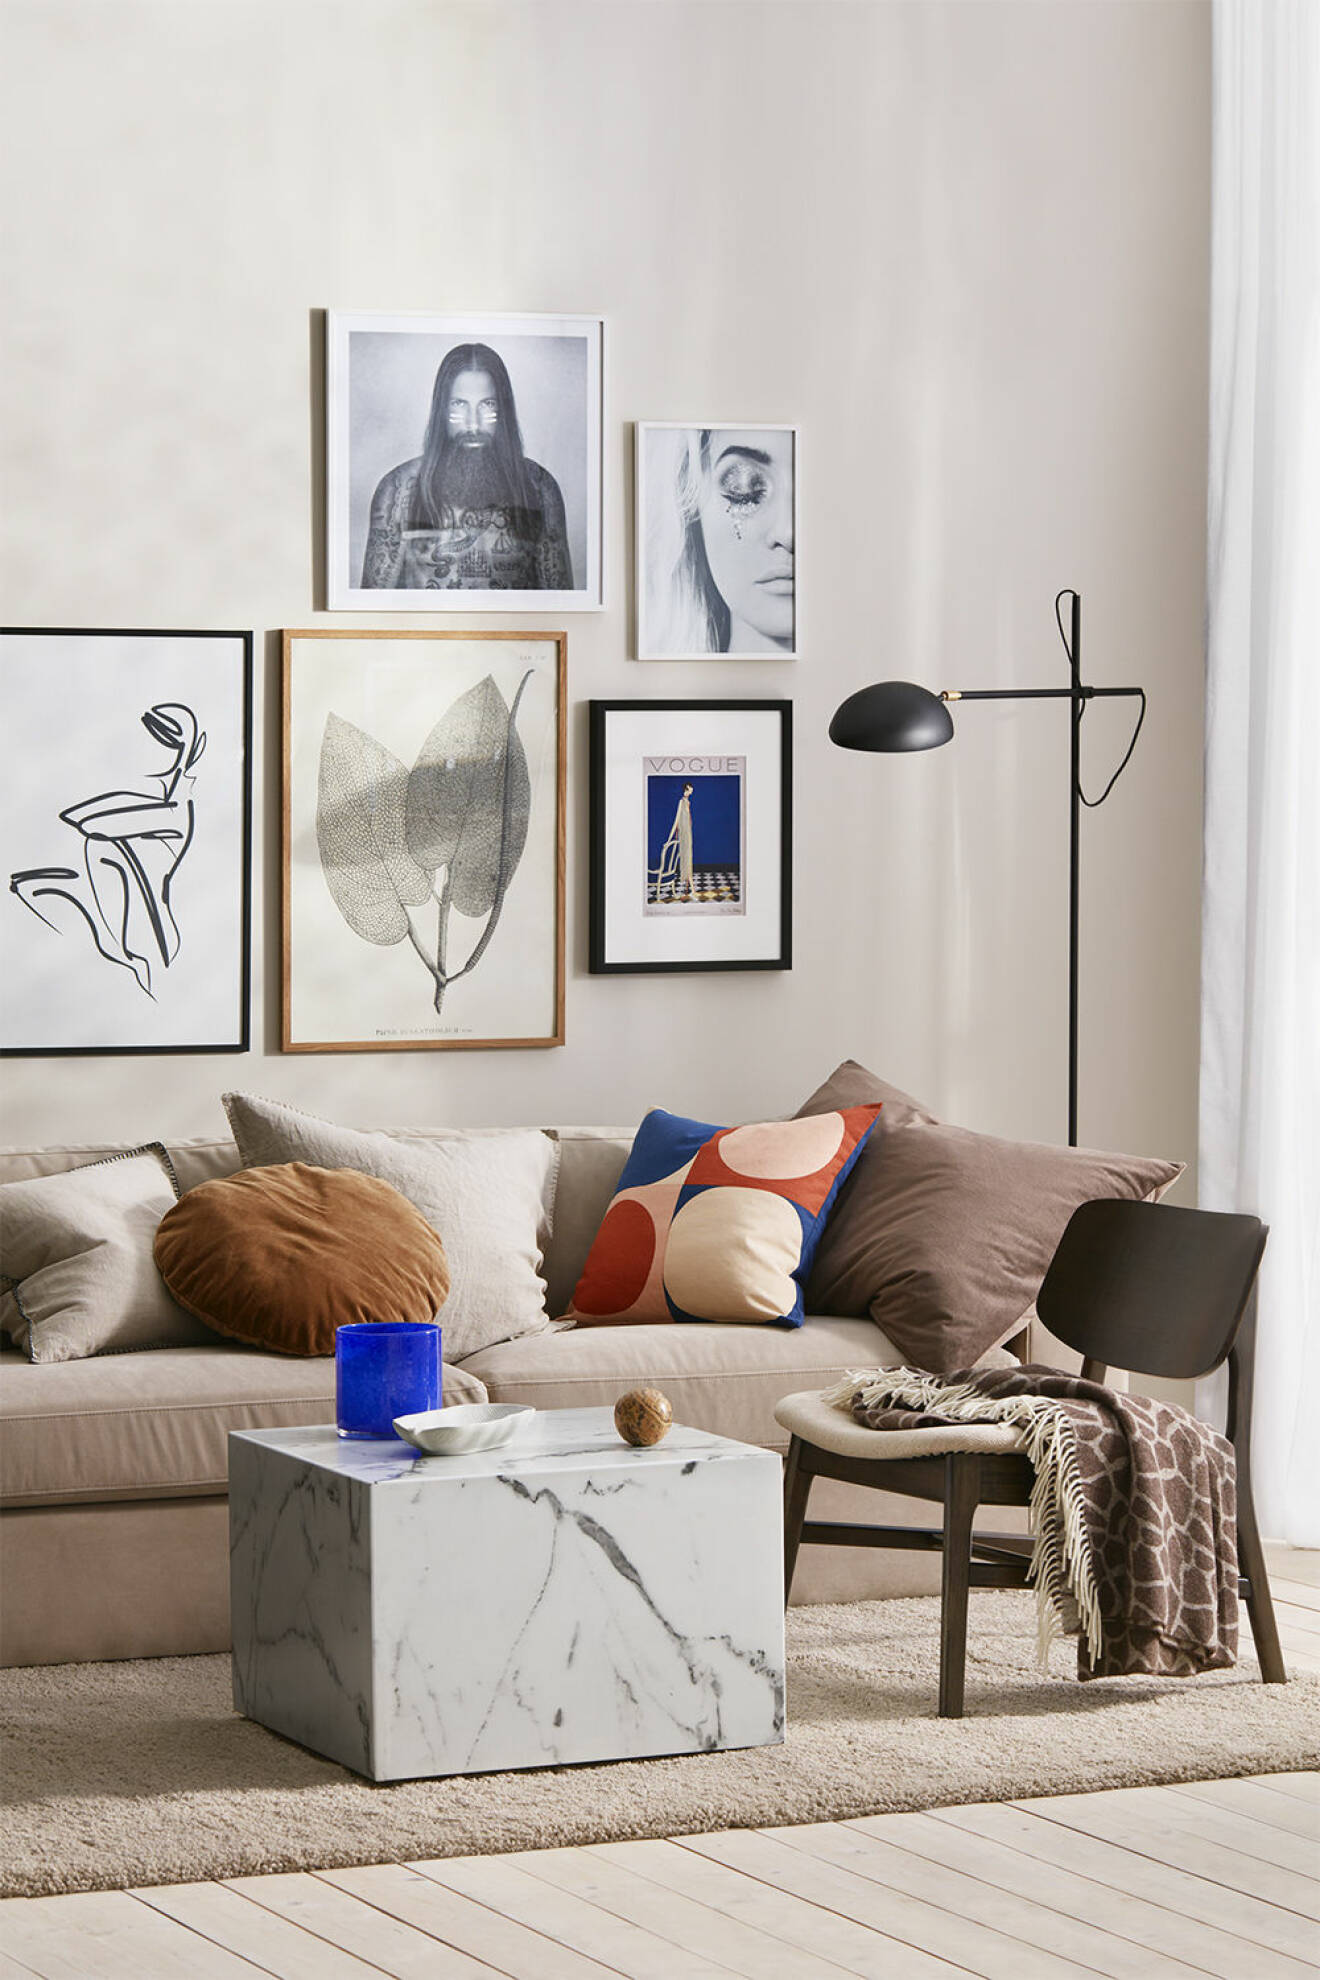 Abstrakta posters, soffa och detaljer från Ellos Homes vårkollektion 2020